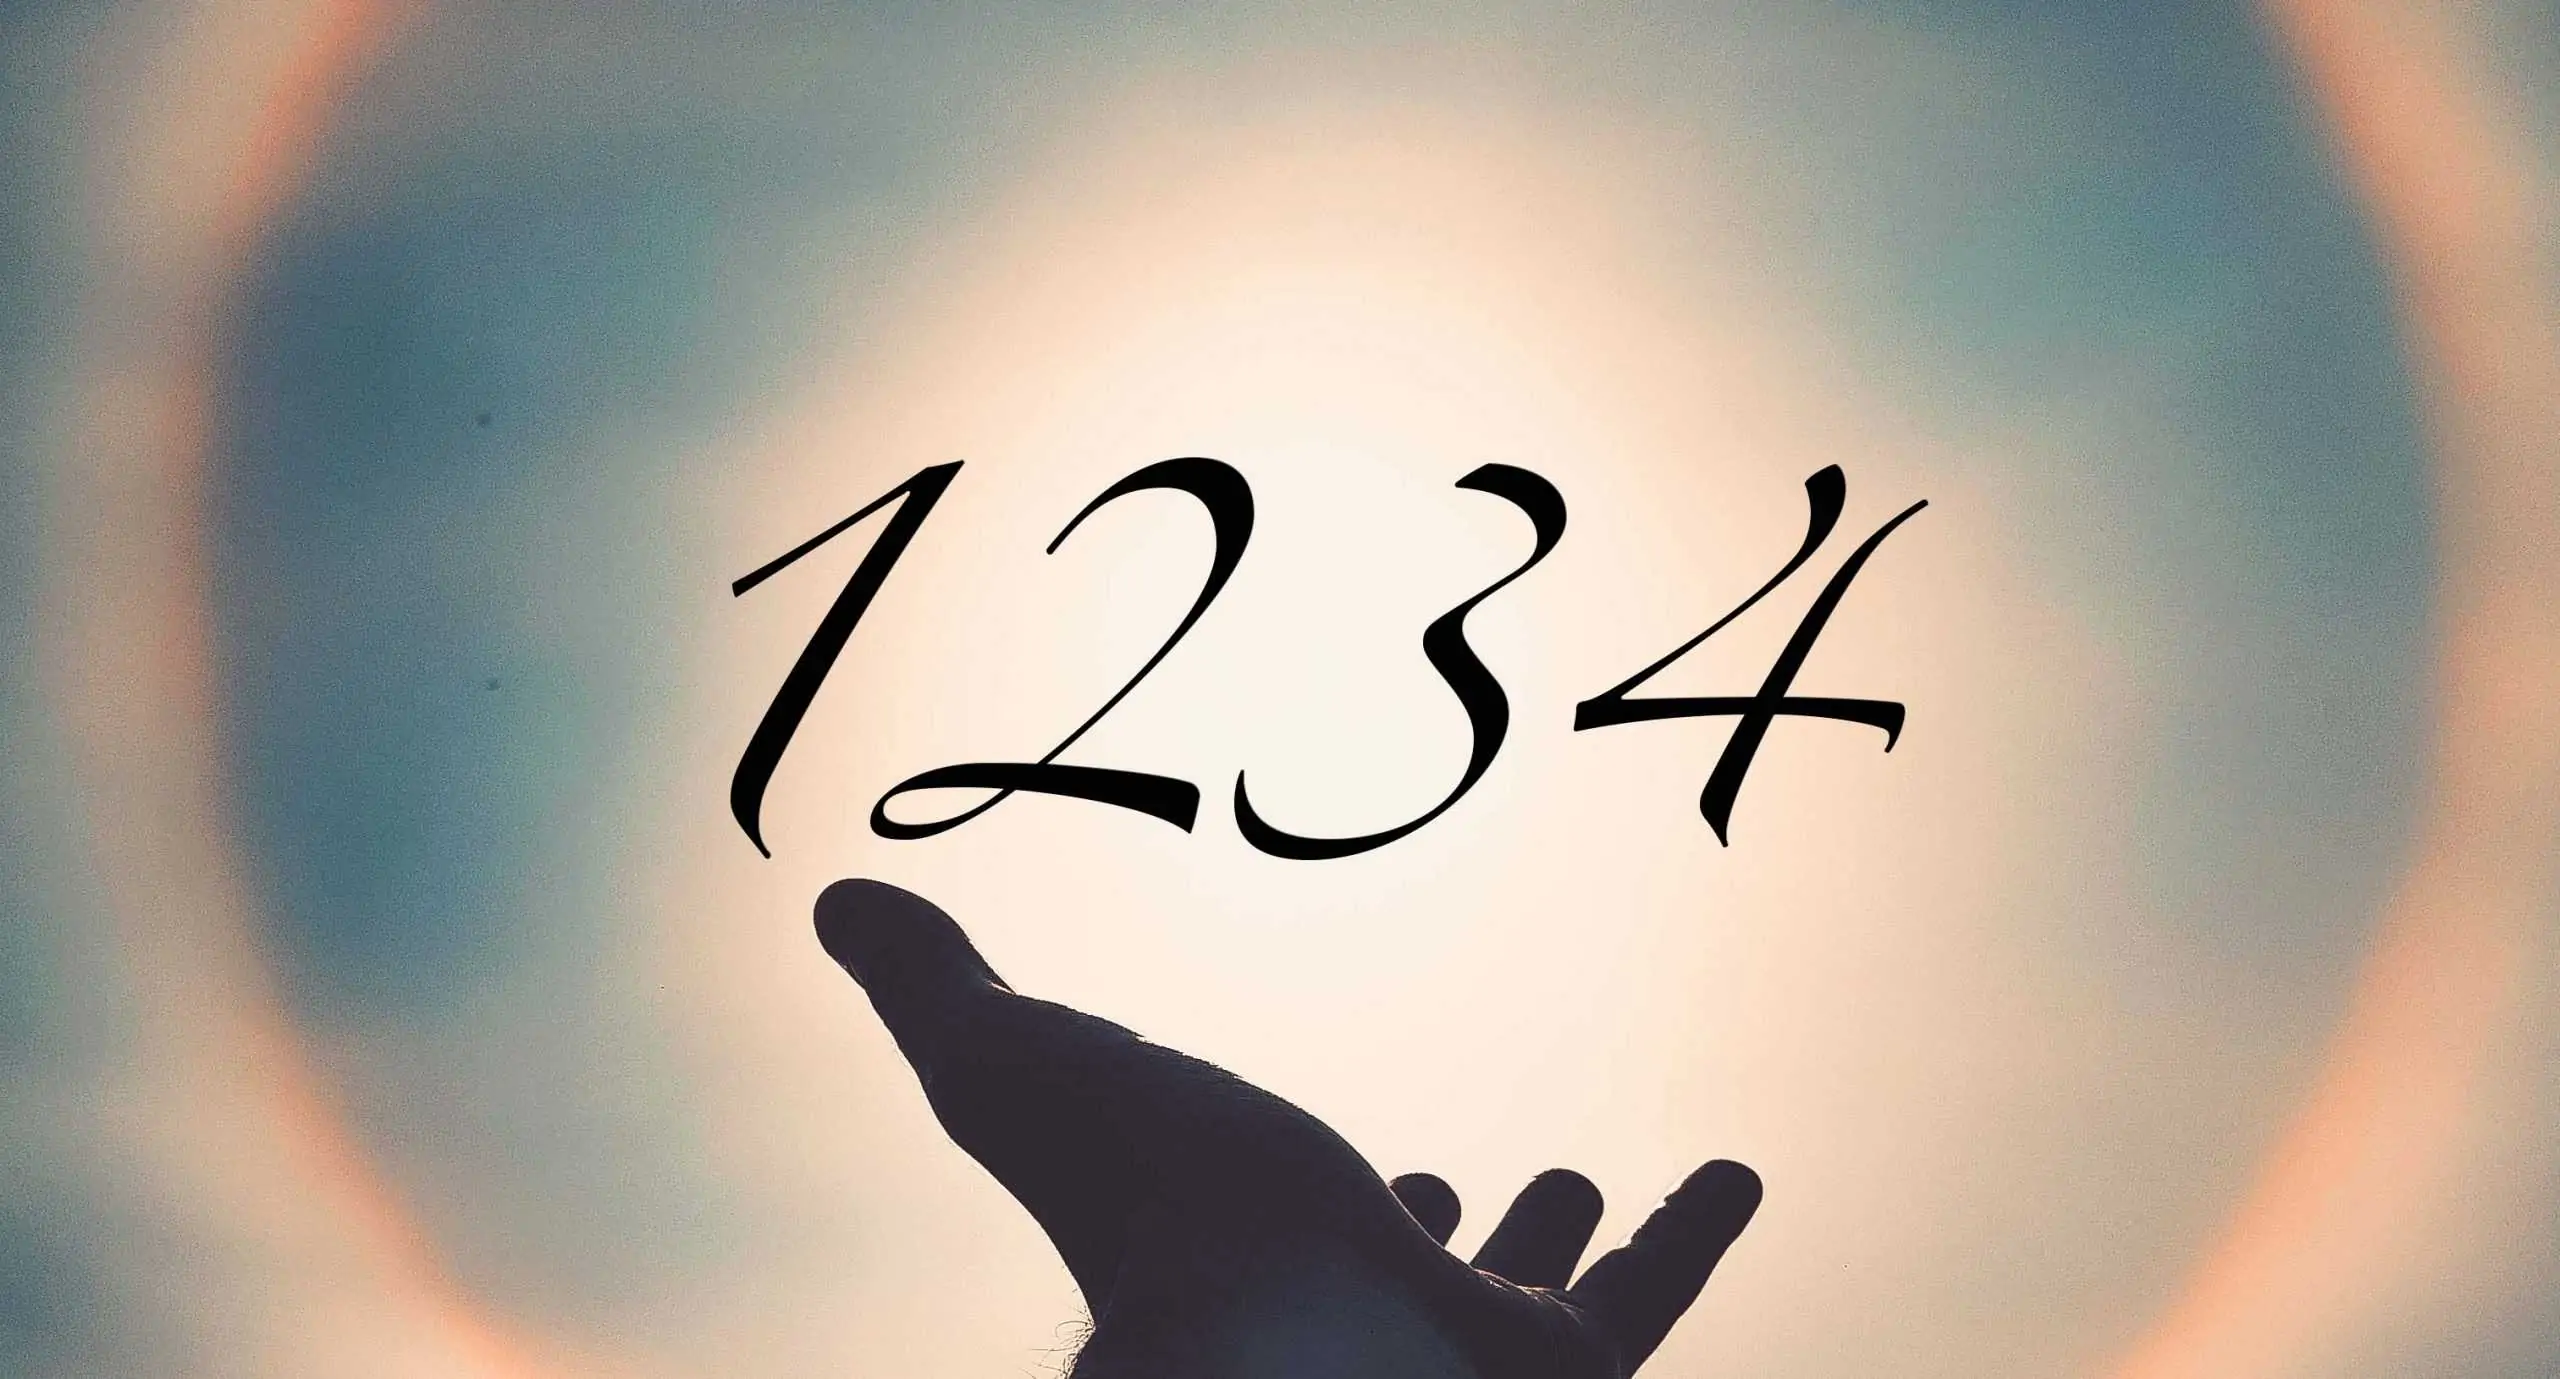 Signification du nombre 1234